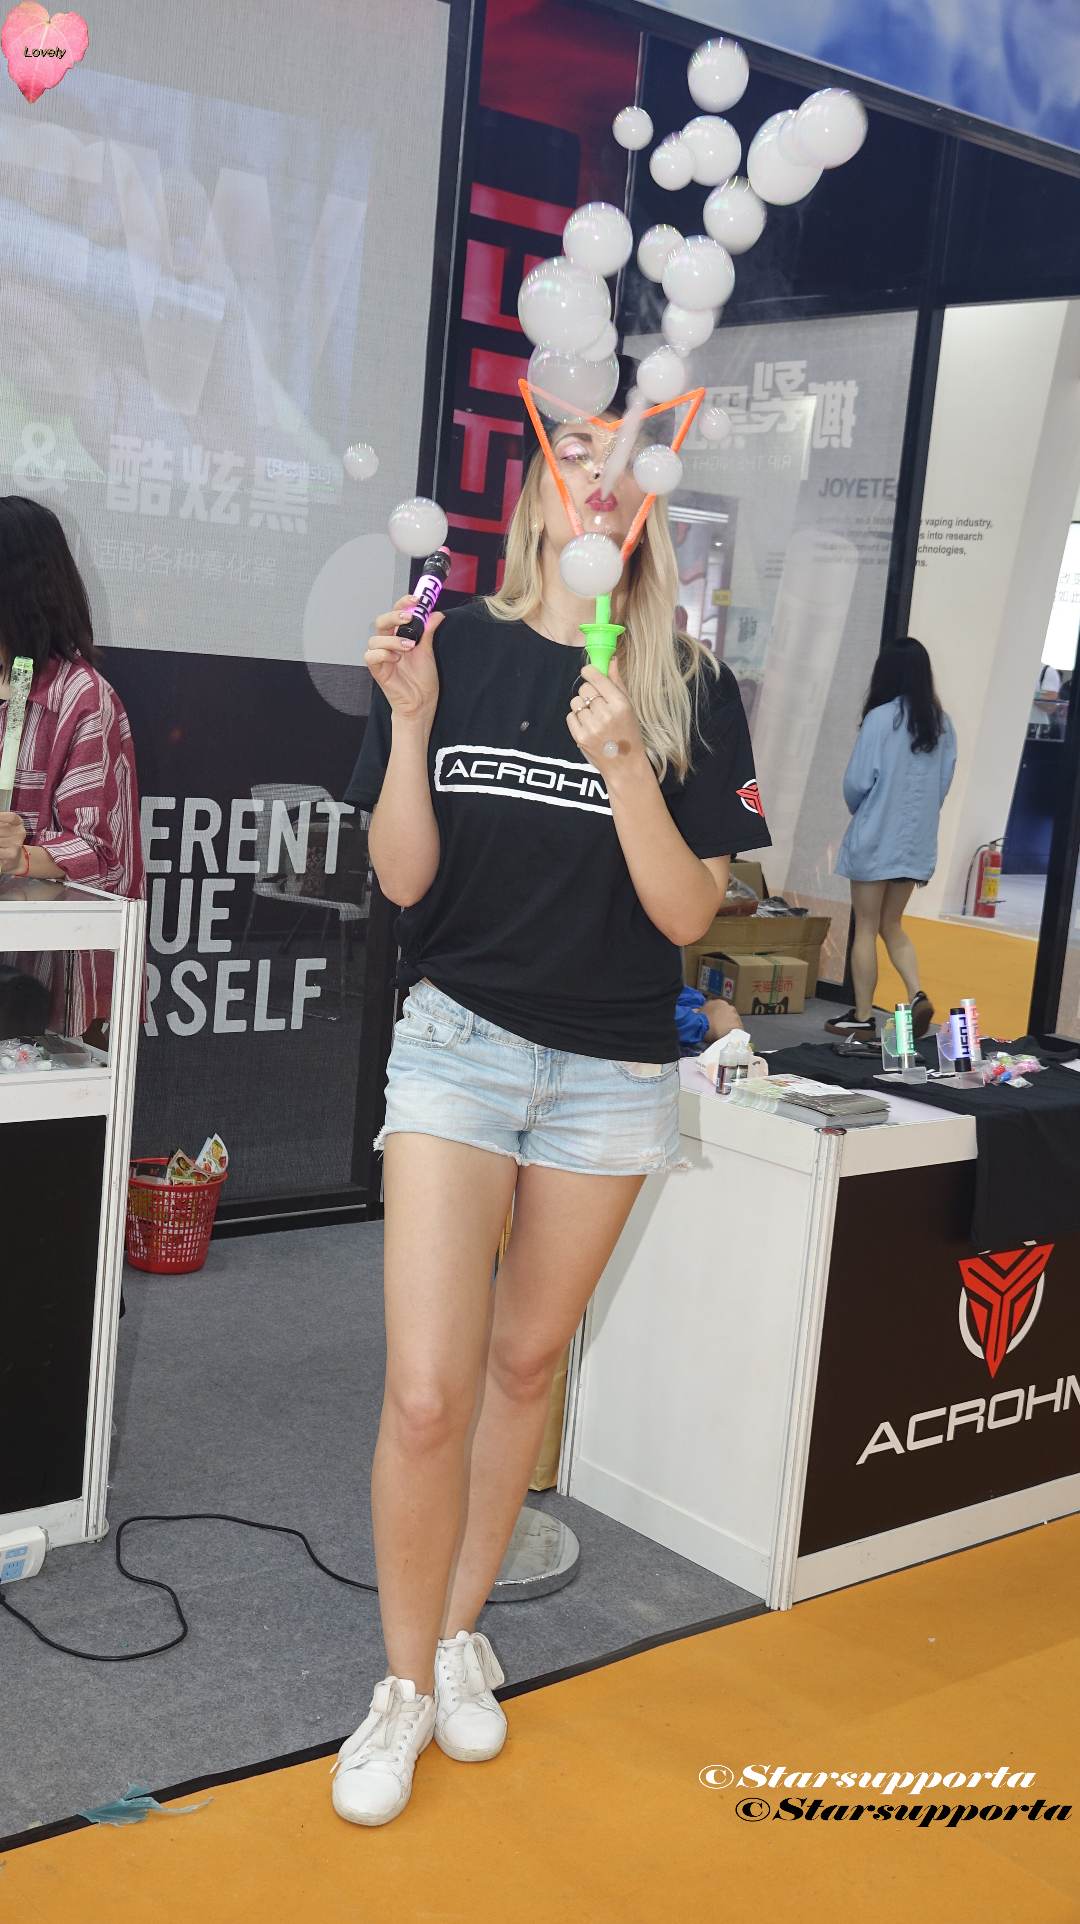 20190414-15 2019深圳国际电子烟产业博览会 - ACROHM @ 深圳會展中心